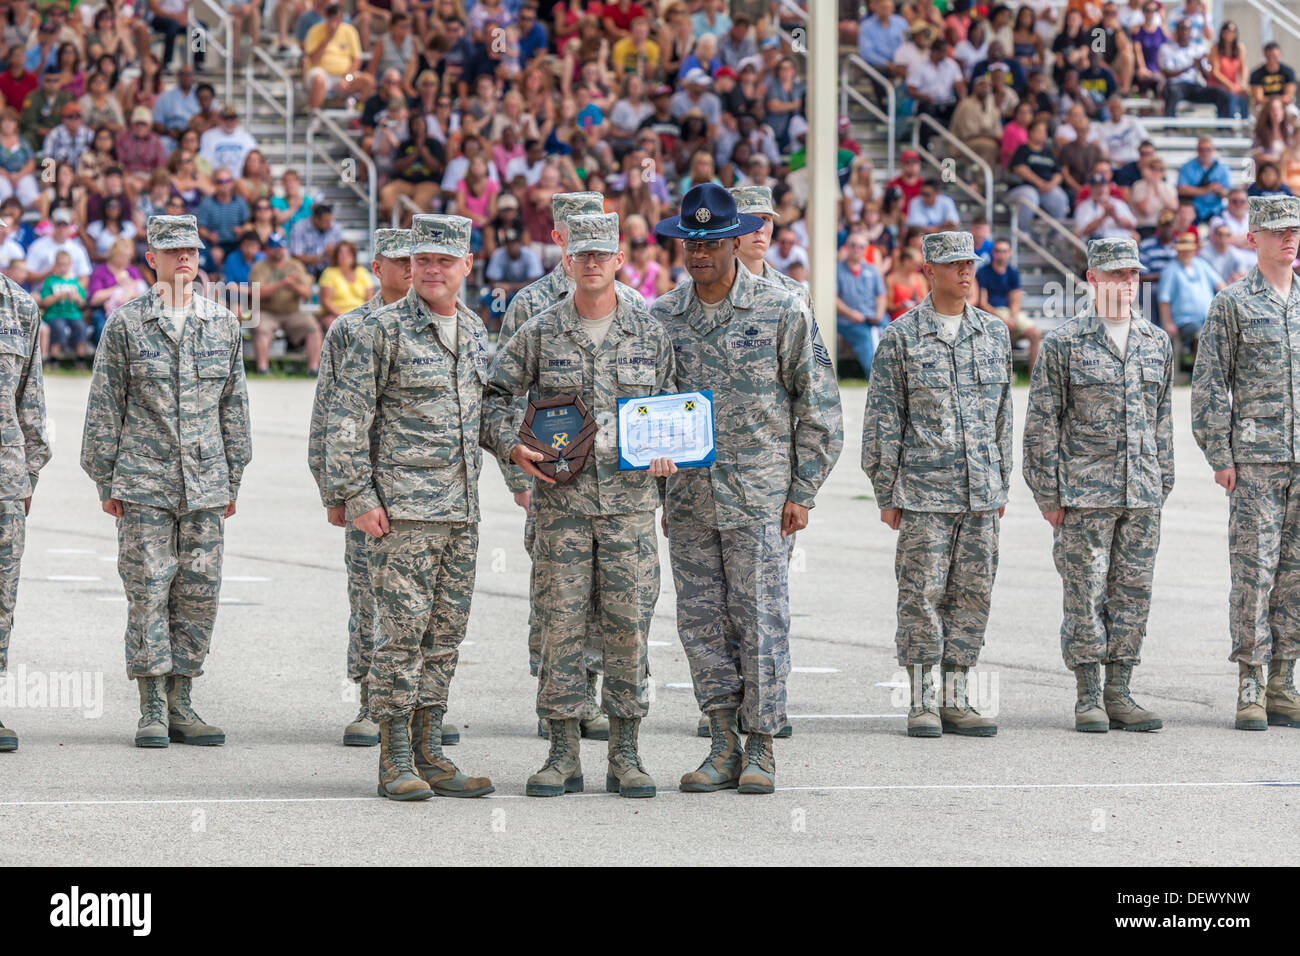 Galardones se entregan durante la Fuerza Aérea de los Estados Unidos formación básica las ceremonias de graduación en San Antonio, Texas. Foto de stock